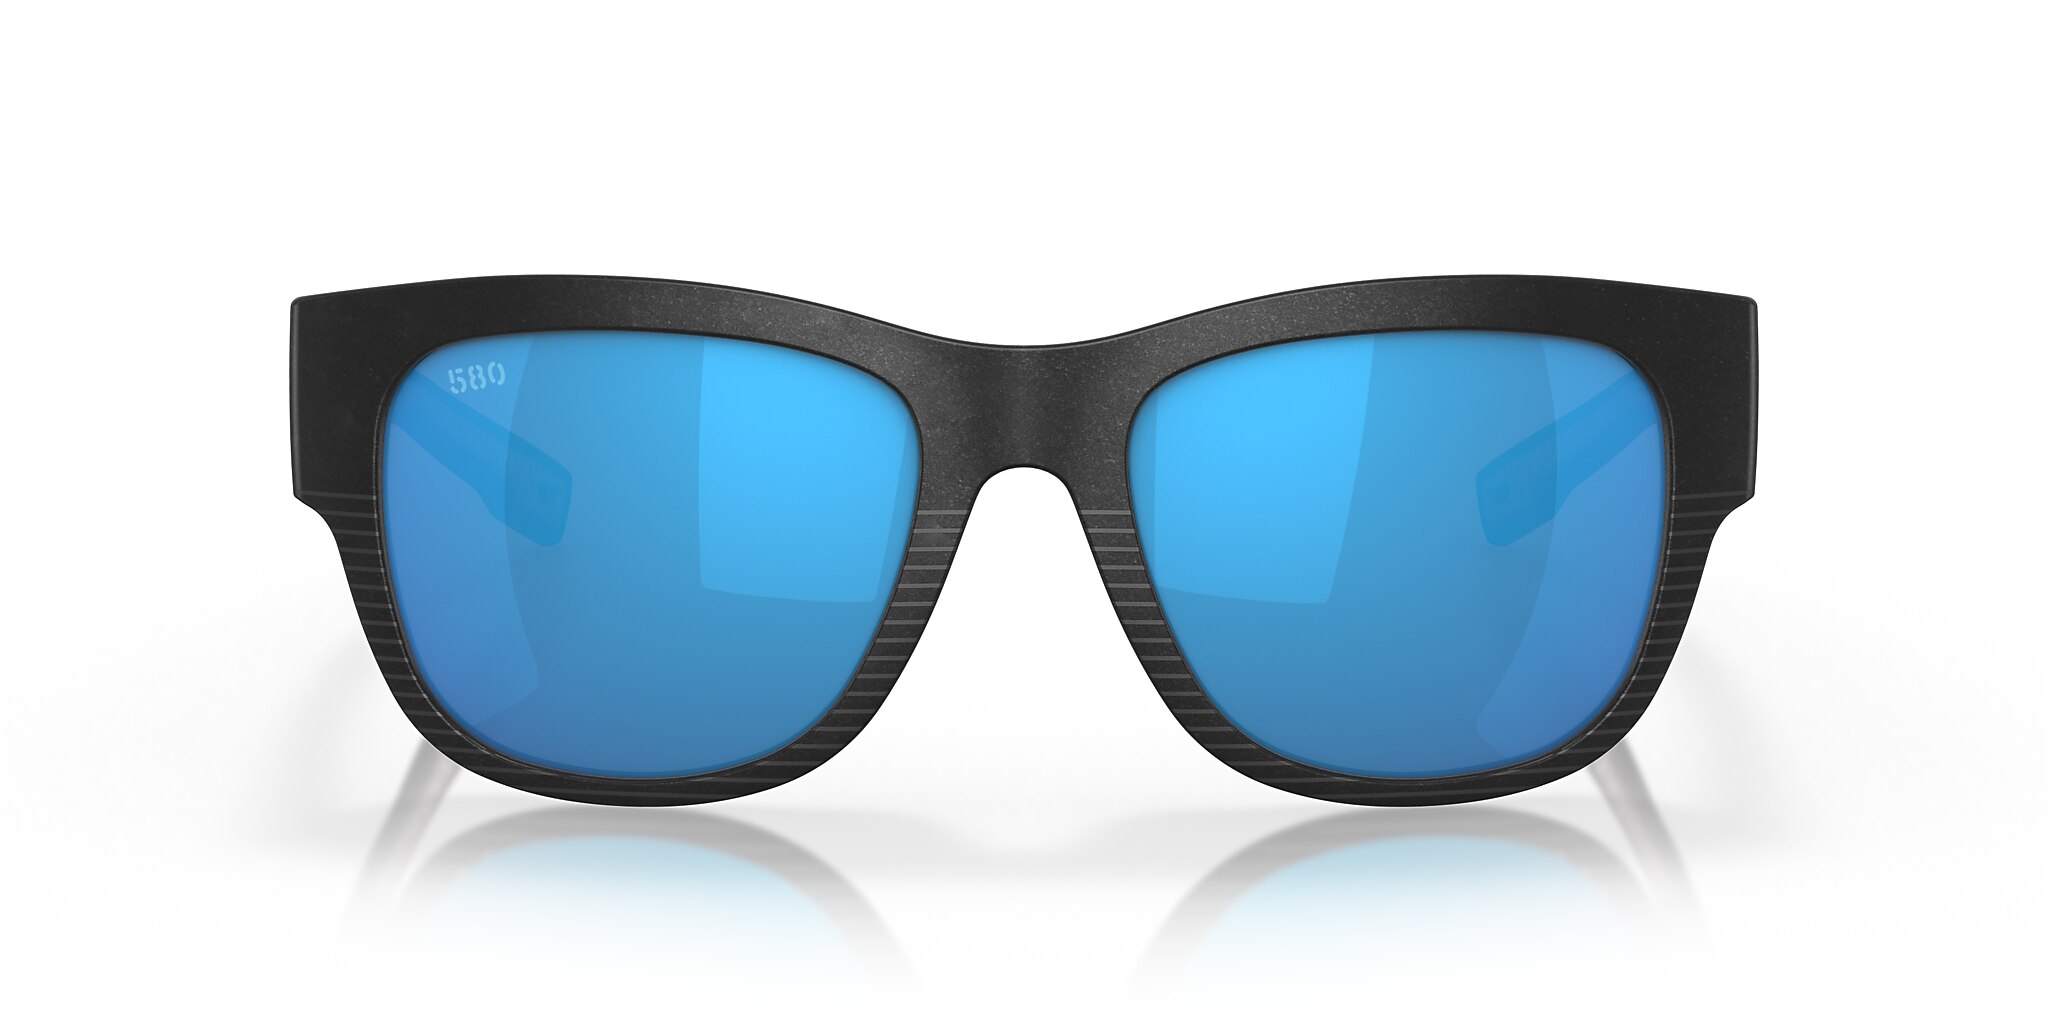 Caleta Polarized Sunglasses in Blue Mirror | Costa Del Mar®